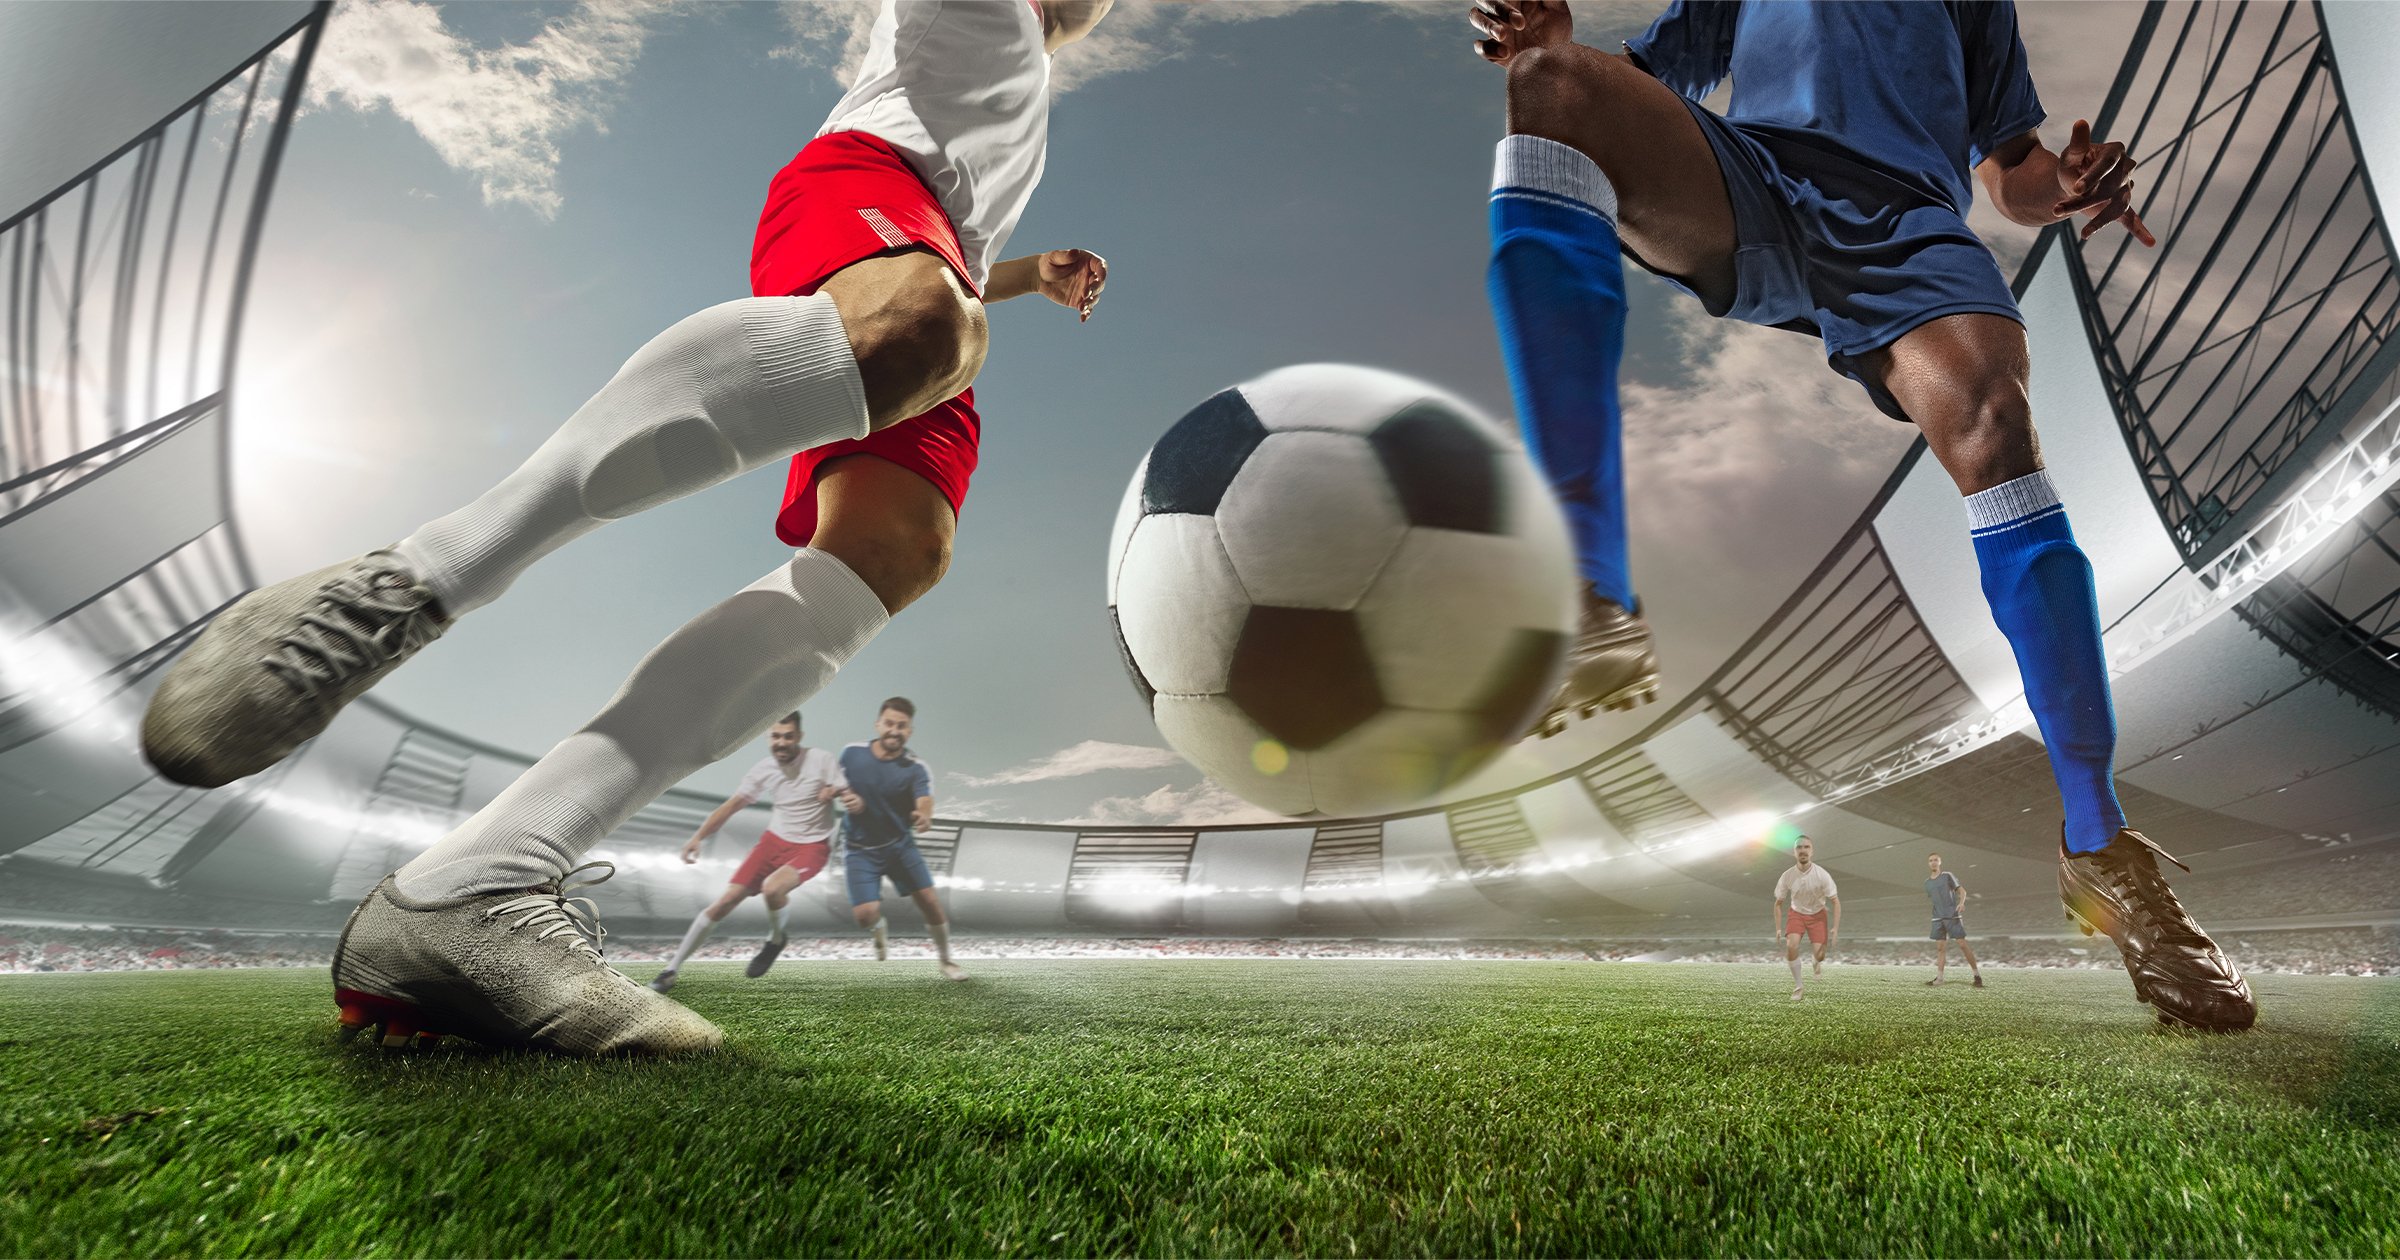 El fútbol soccer como herramienta para desarrollar habilidades motoras